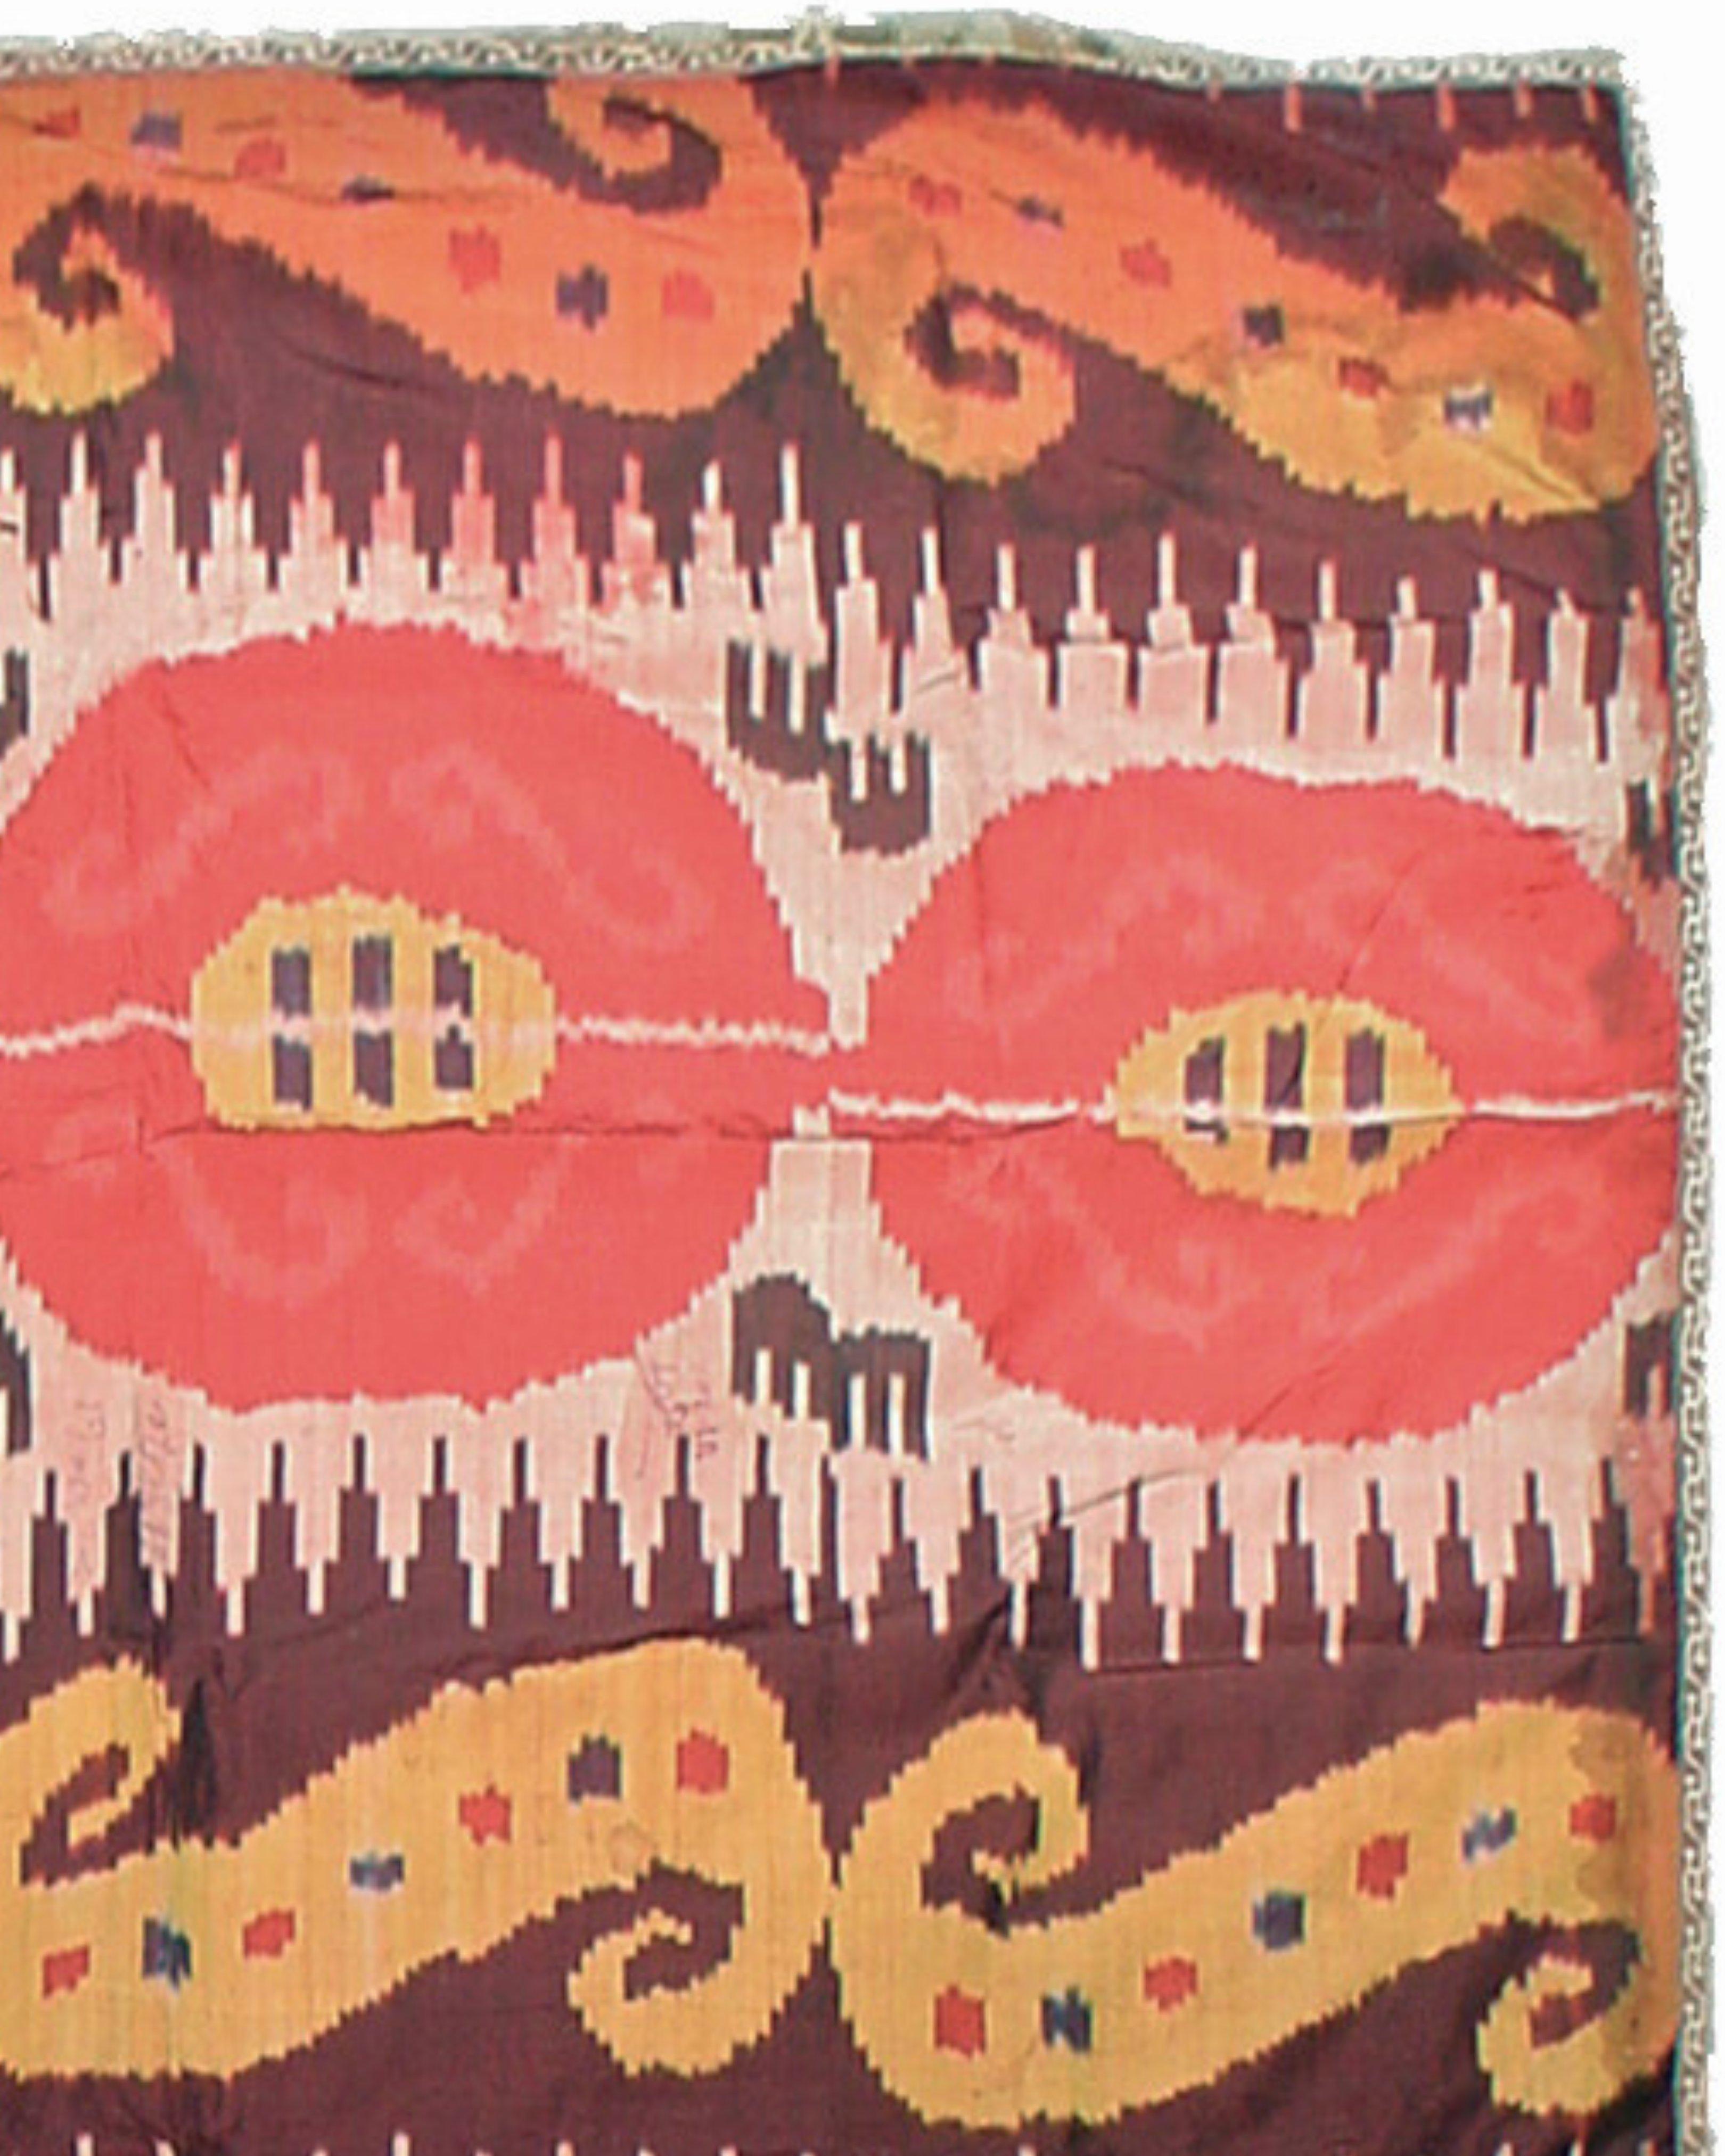 Textile de couverture Ikat ancien, fin du 19e siècle

Informations supplémentaires :
Dimensions : 4'10